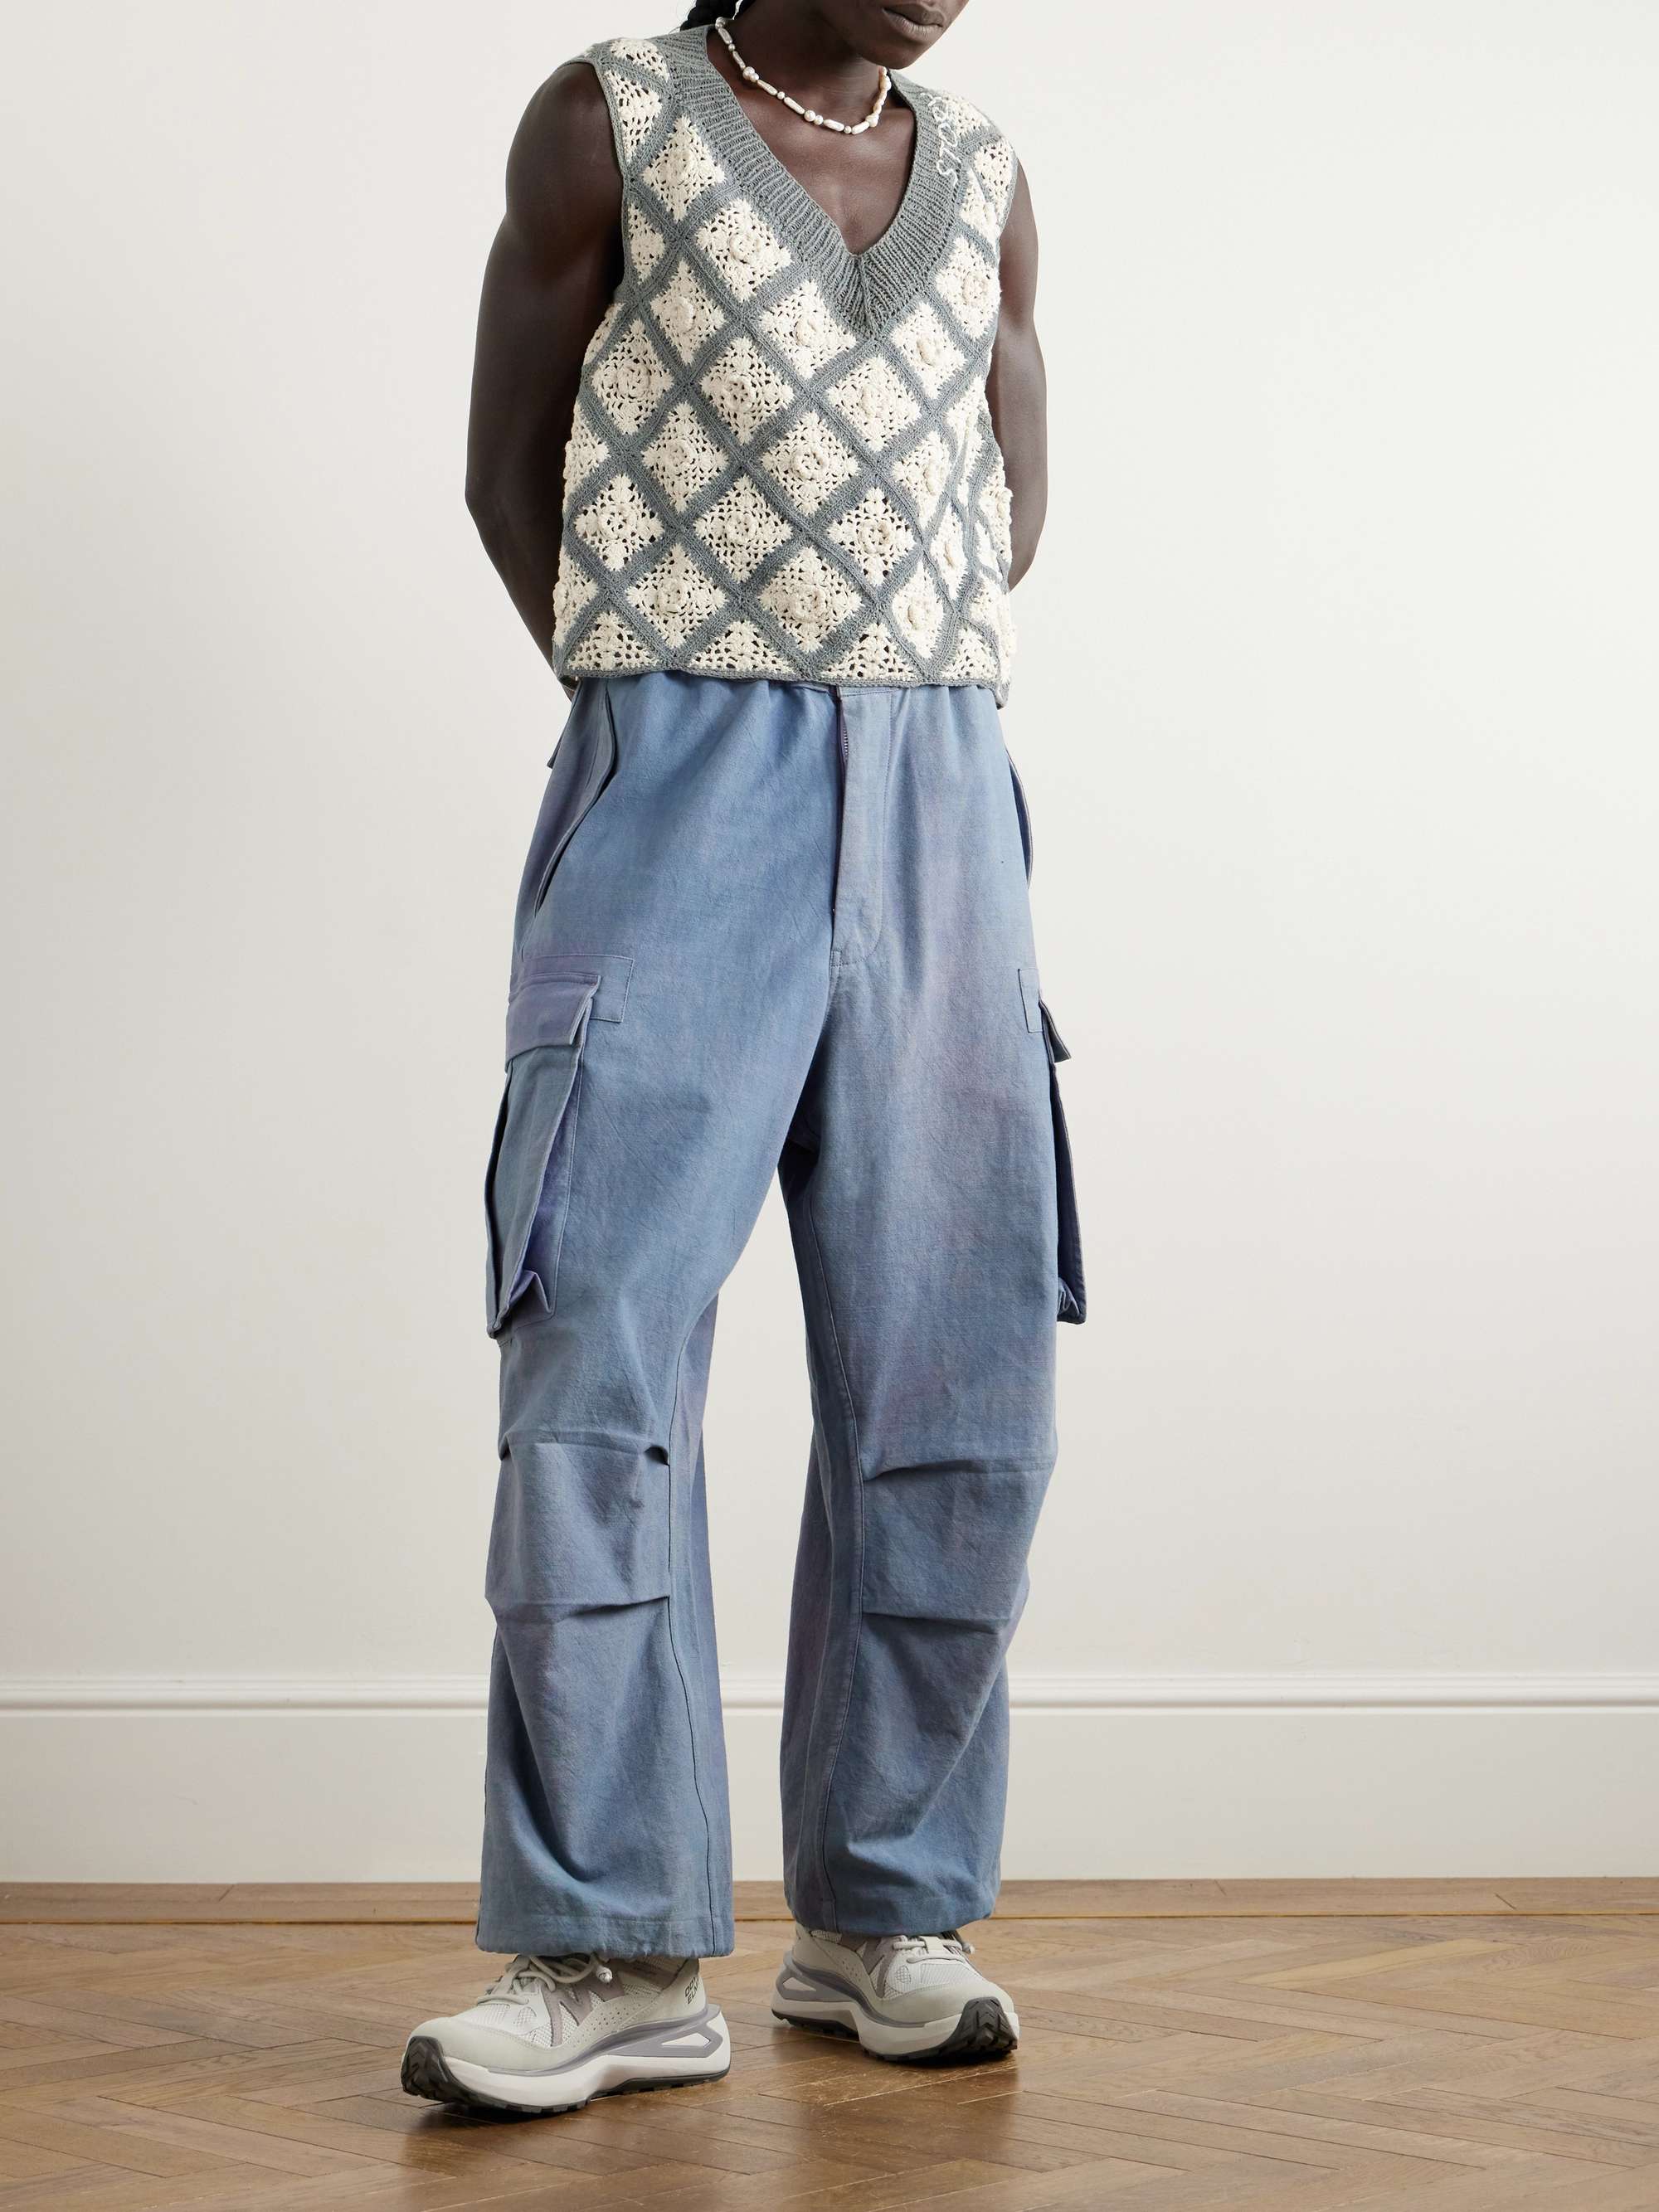 STORY MFG. Tea Crocheted Organic Cotton Sweater Vest for Men | MR PORTER